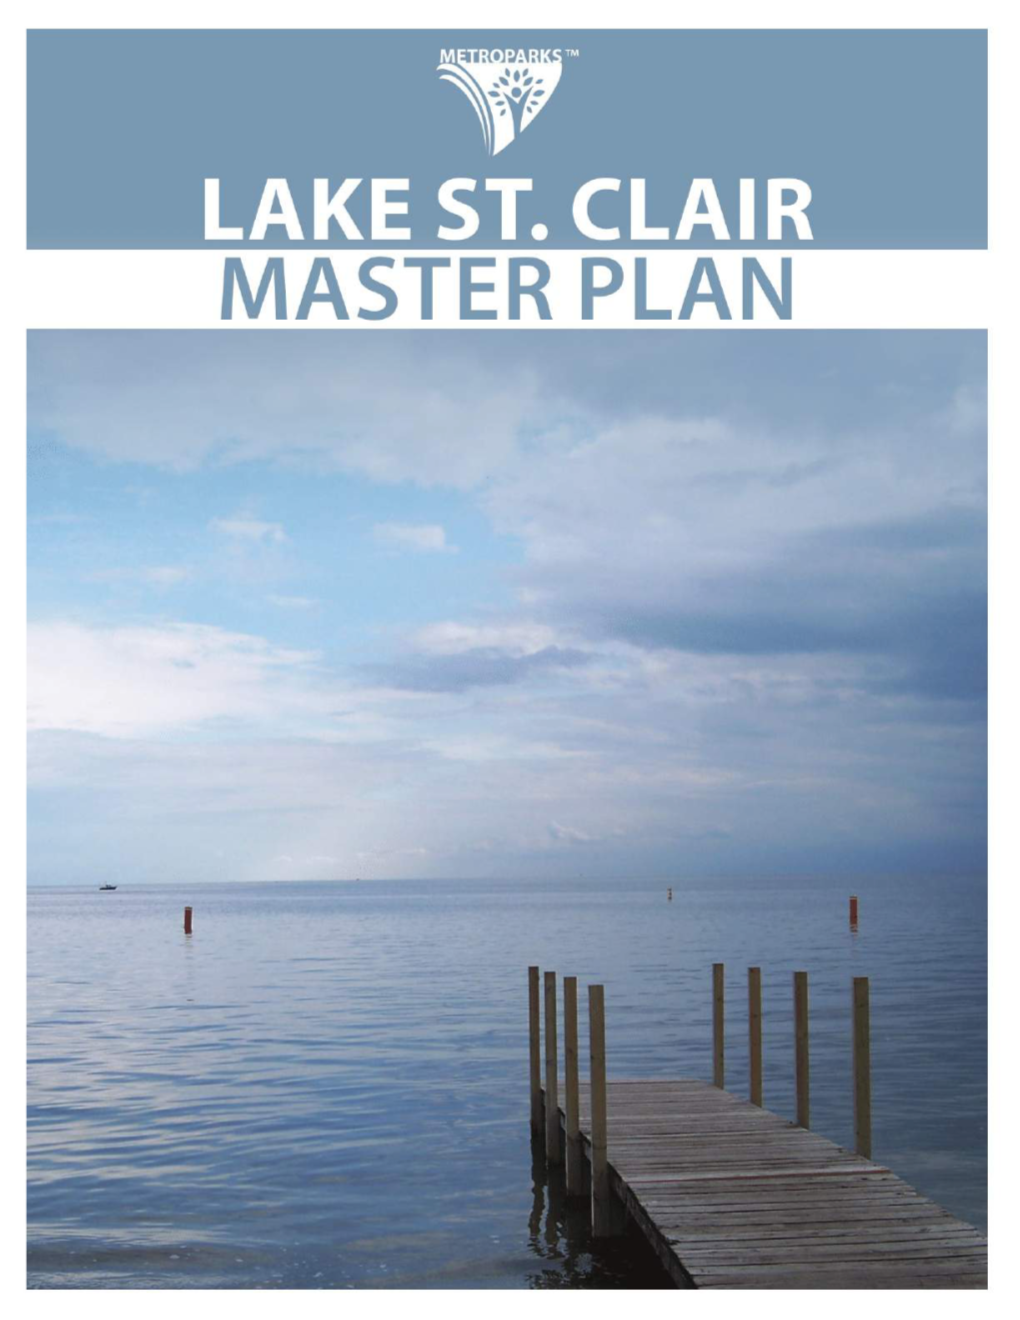 Lake St. Clair Metropark Master Plan